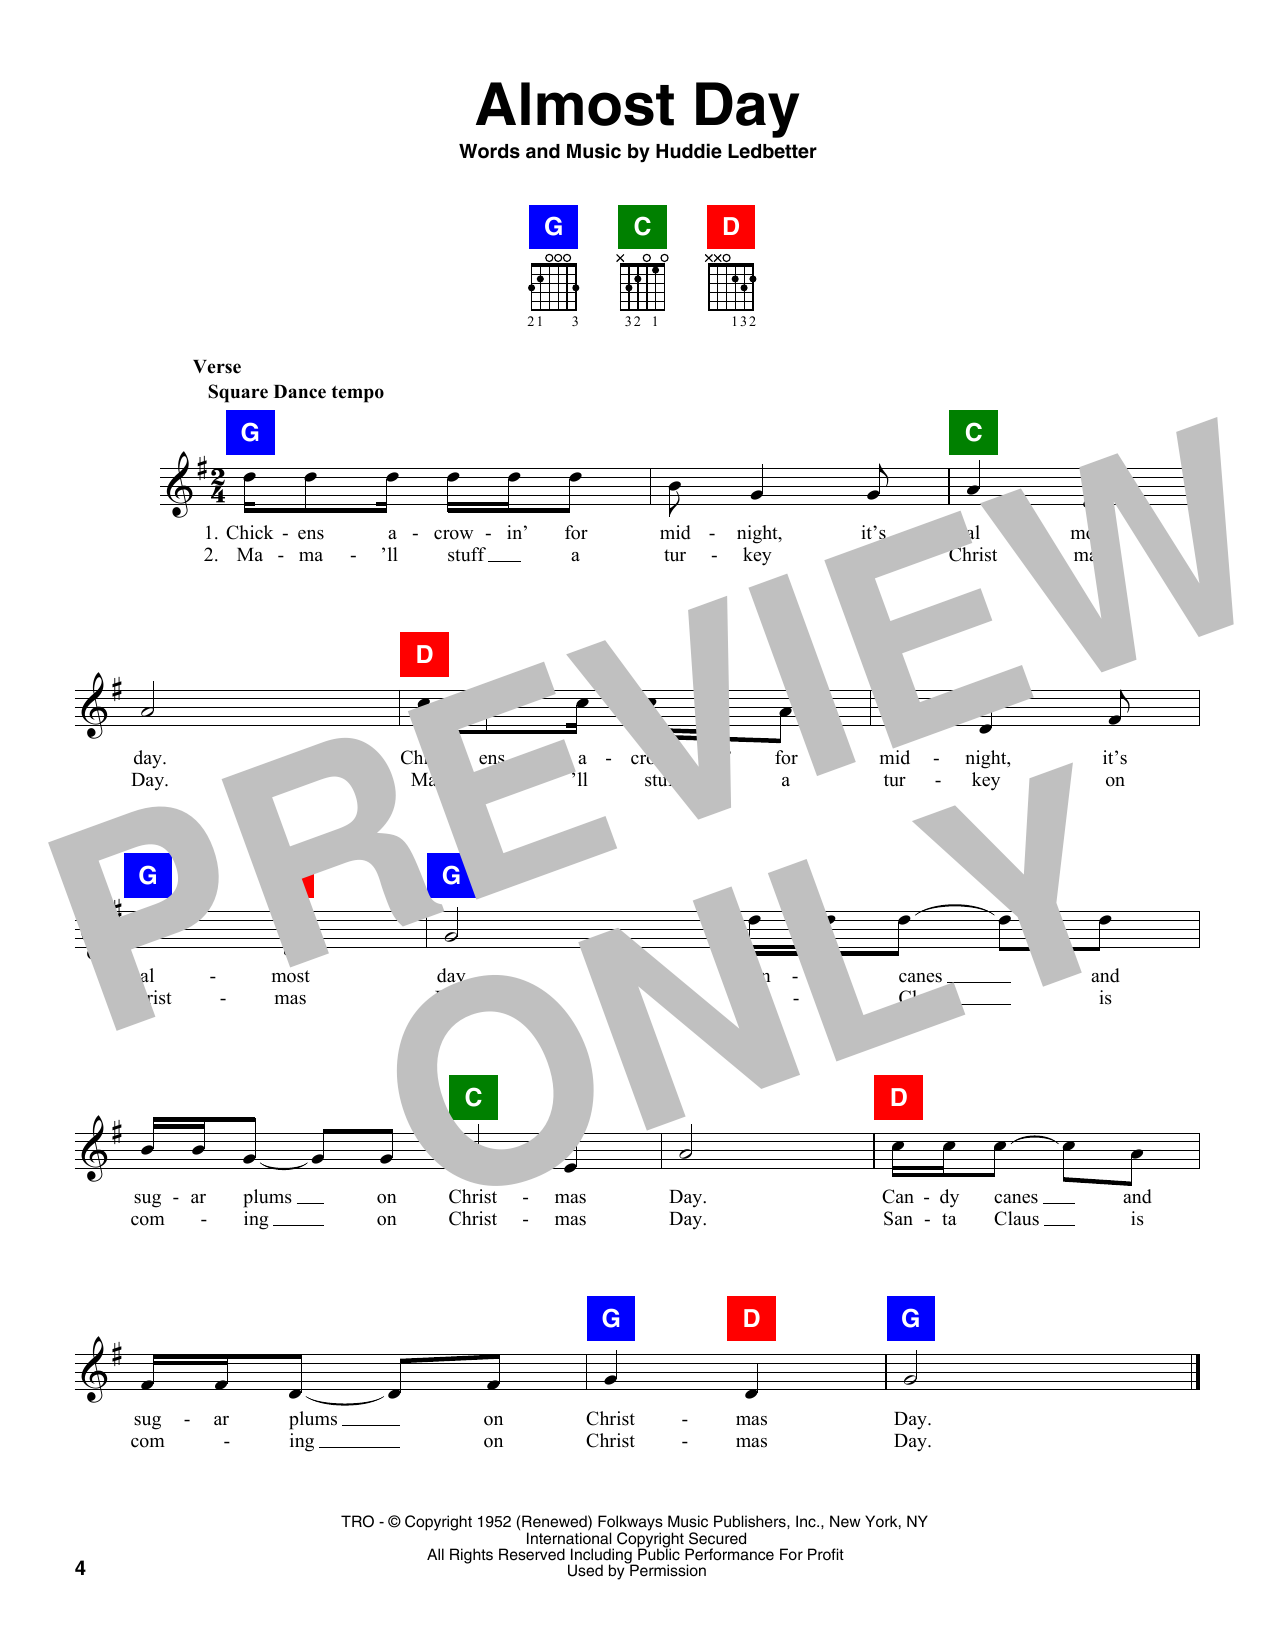 Huddie Ledbetter Almost Day Sheet Music Notes & Chords for Ukulele - Download or Print PDF